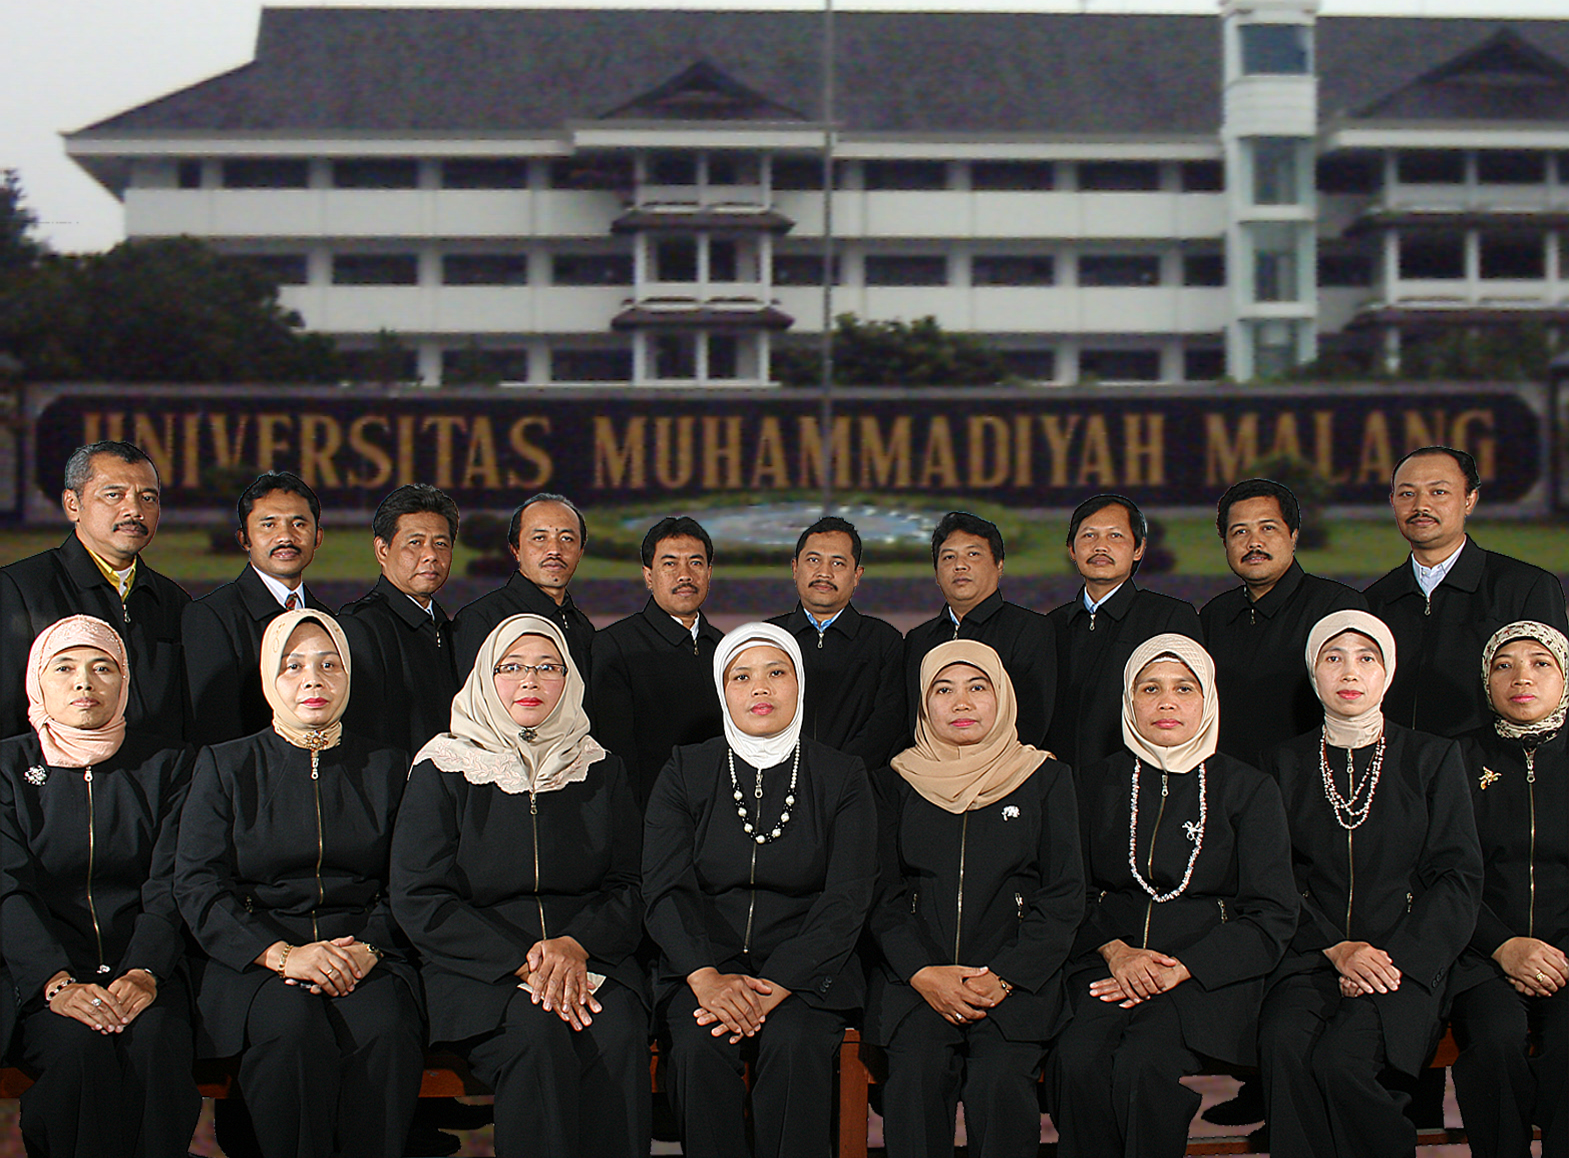 Daftar Jurusan Di Universitas Muhammadiyah Malang